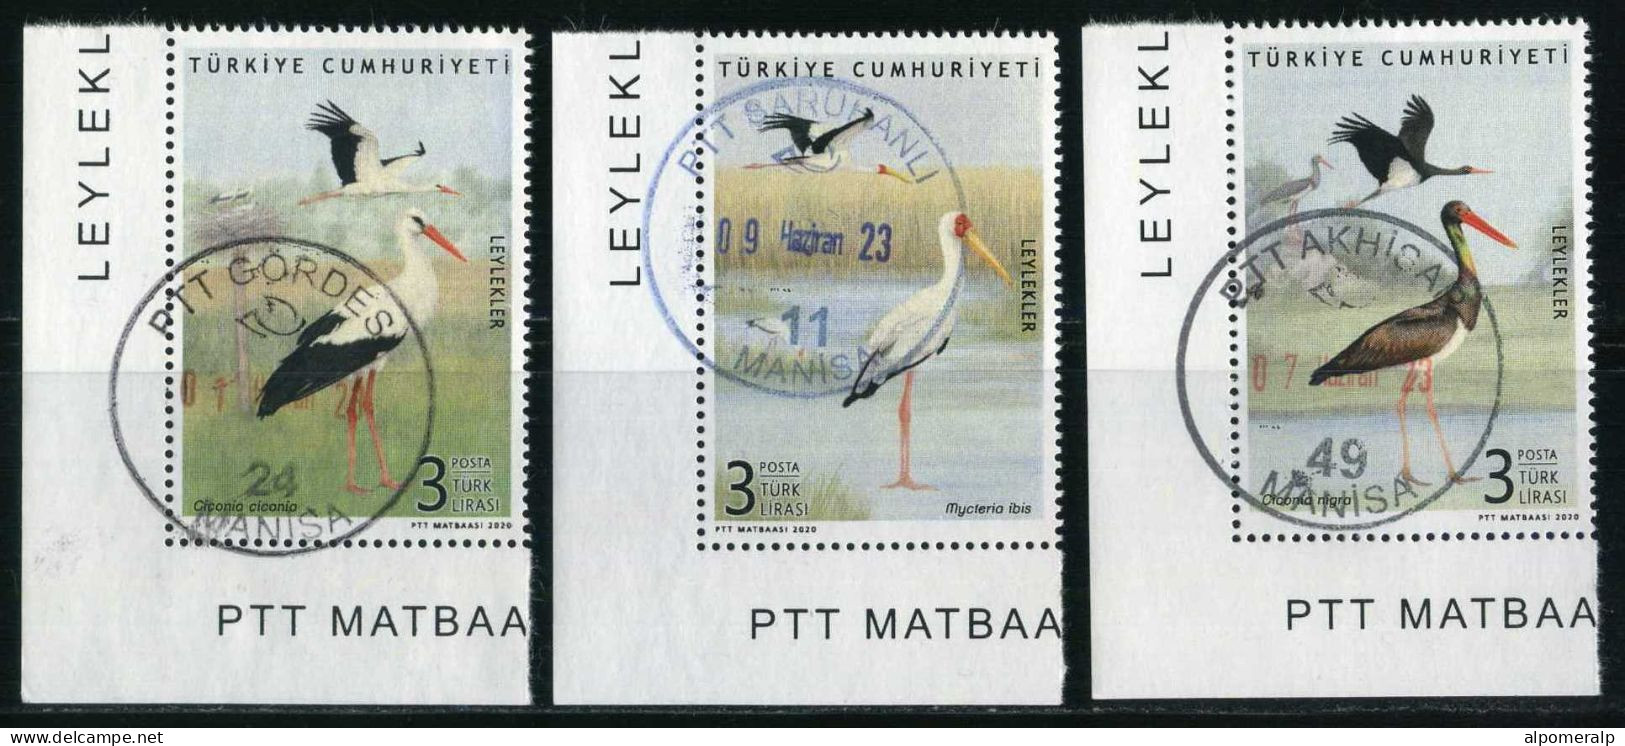 Türkiye 2020 Mi 4597-4599 Storks: White Stork, Yellow-Billed Stork, Black Stork, Birds, Animals (Fauna) - Gebruikt